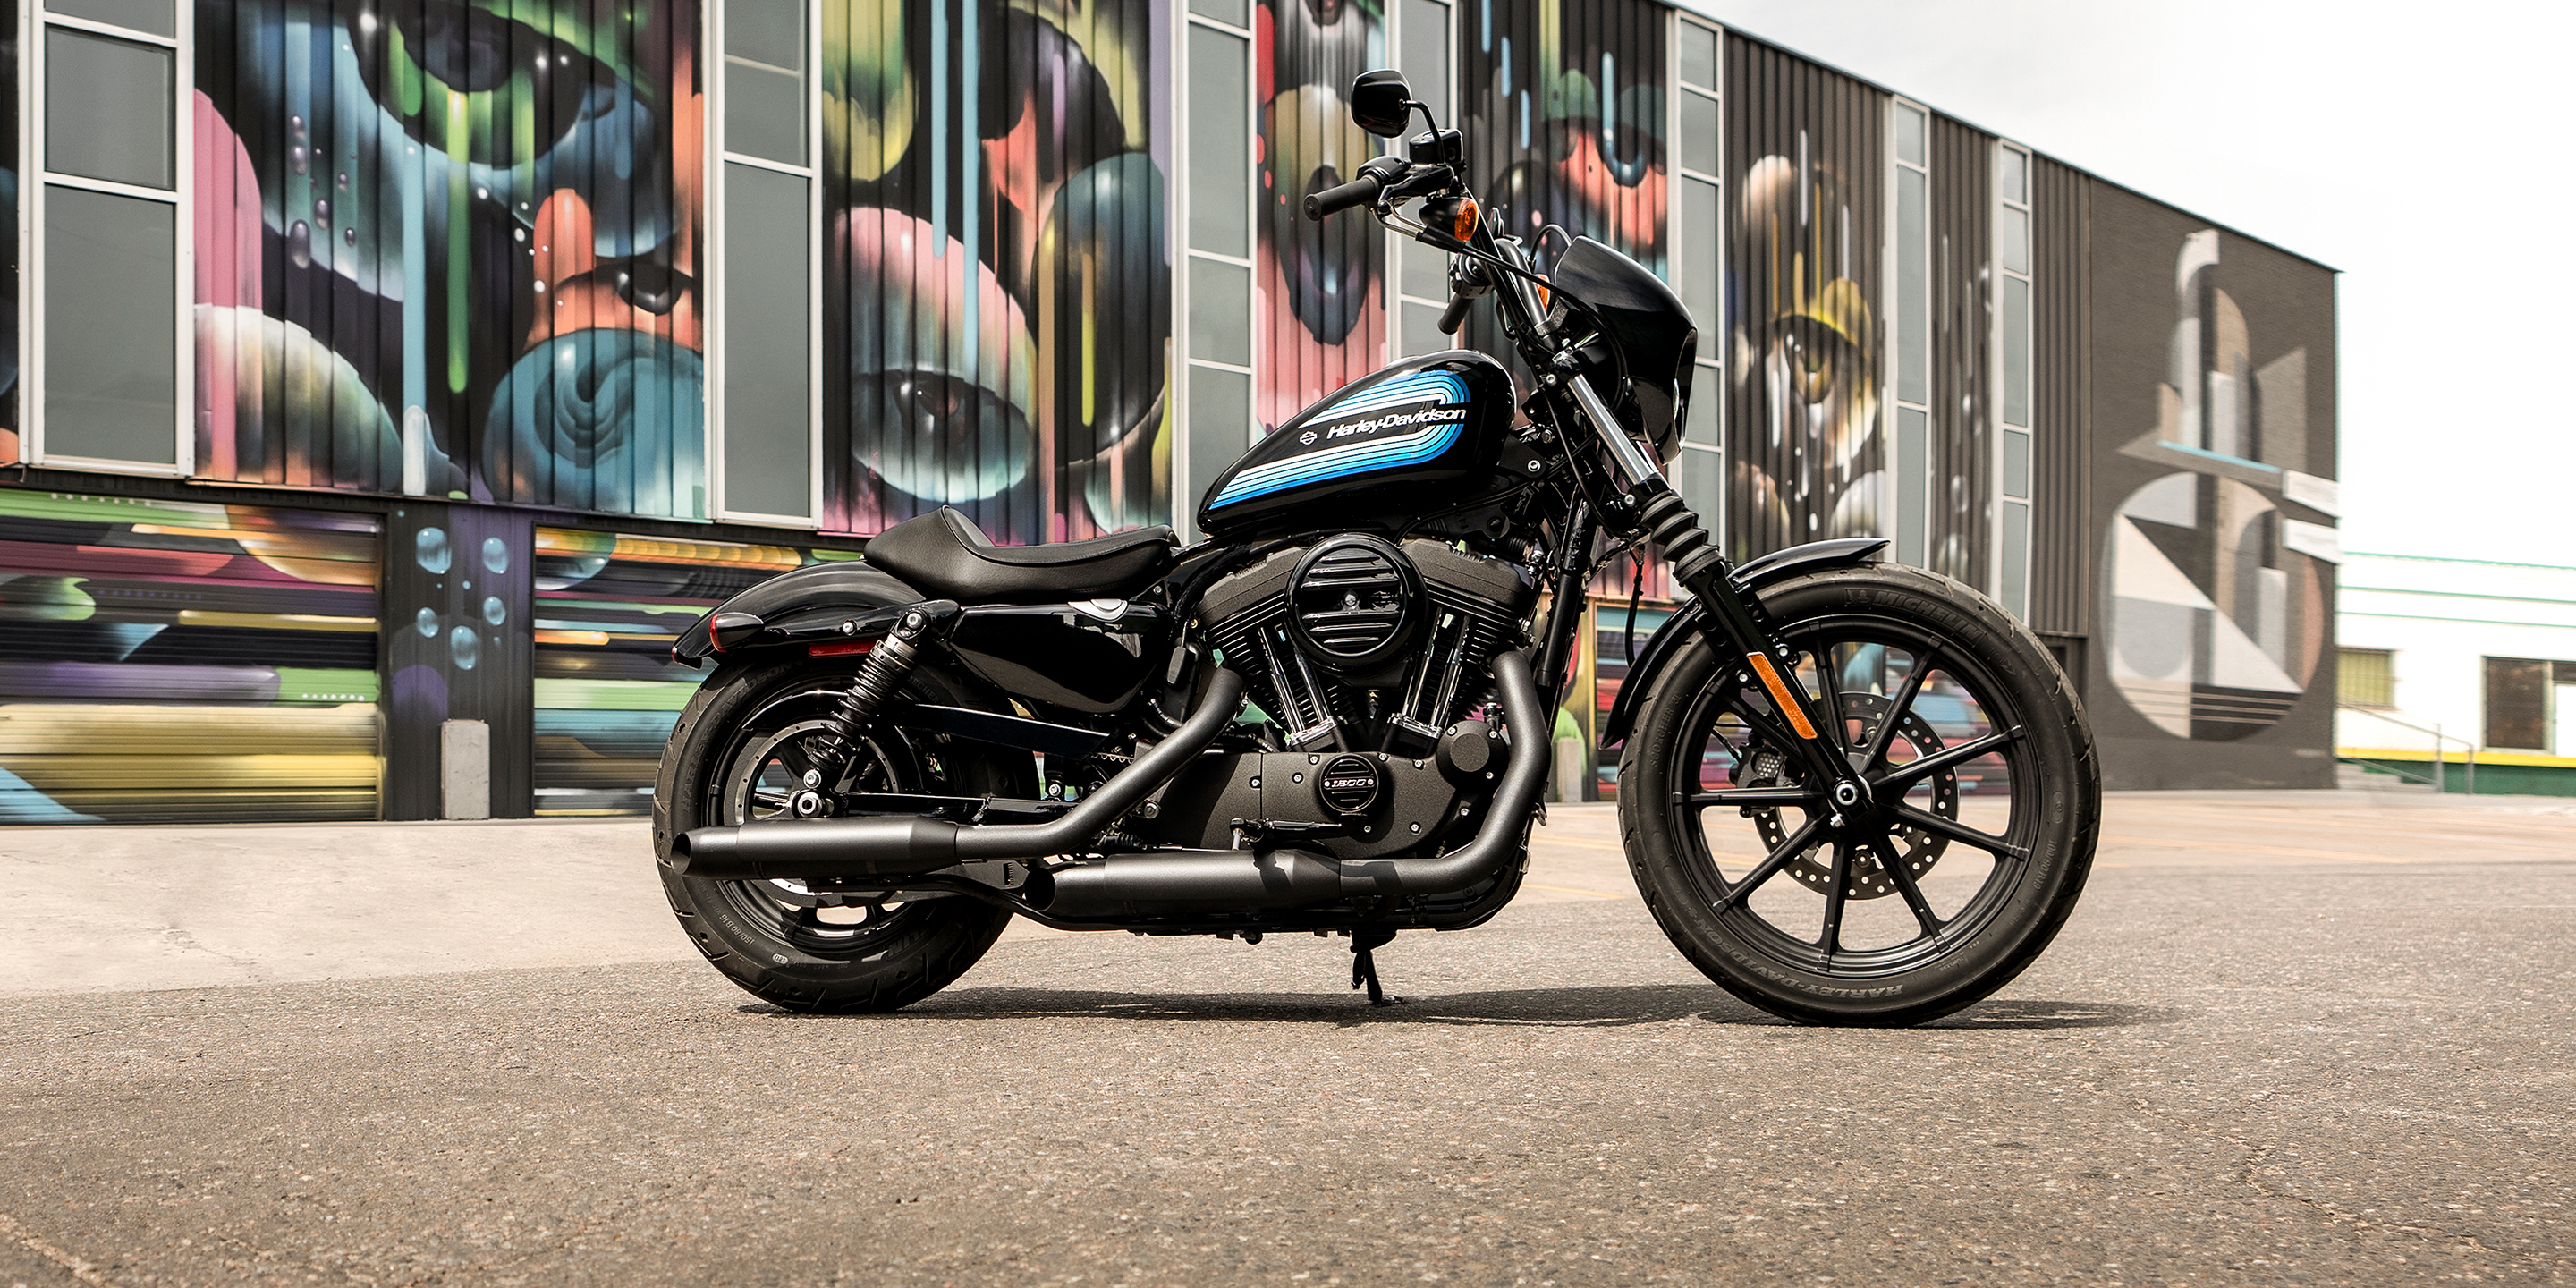 2019 Iron 1200 Motorcycle | Harley-Davidson USA